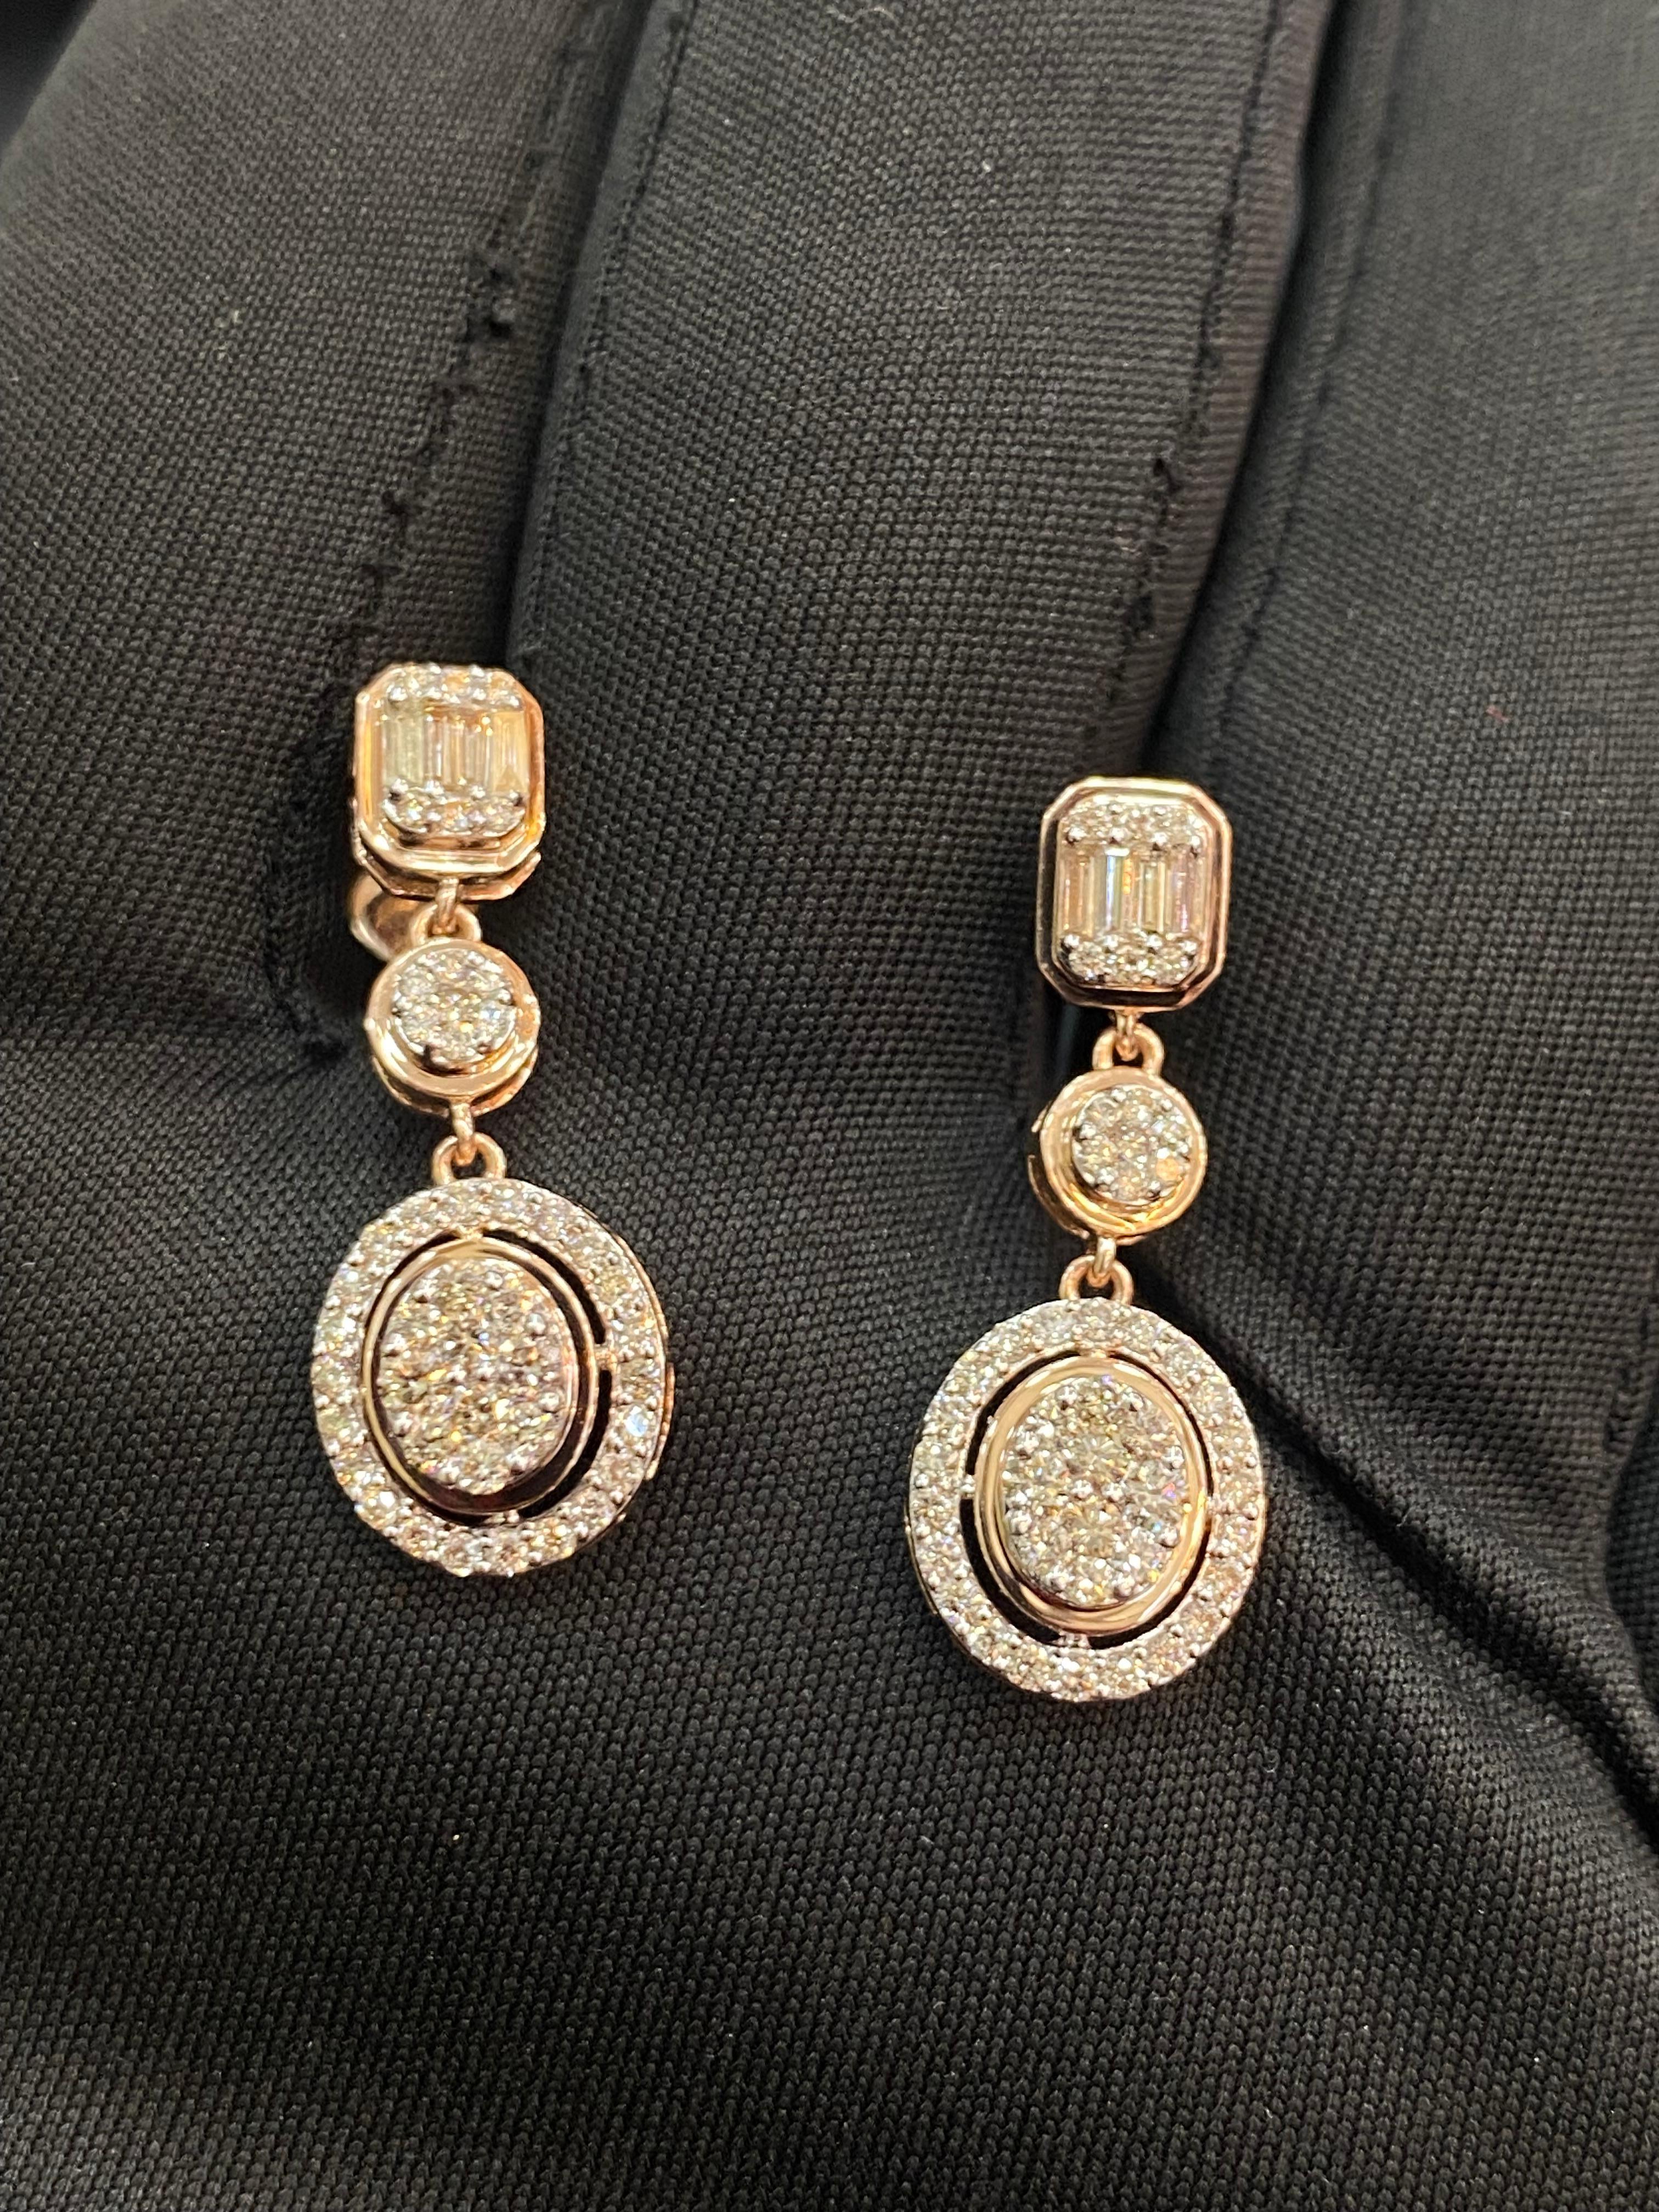 Erleben Sie den Inbegriff von Glamour in diesen bezaubernden 1,25-Karat-Diamant-Ohrringen, die an einer Kette hängen. Gönnen Sie sich einen Hauch von Bliss mit diesem exquisiten Paar, das ein endloses Lächeln und strahlende Eleganz